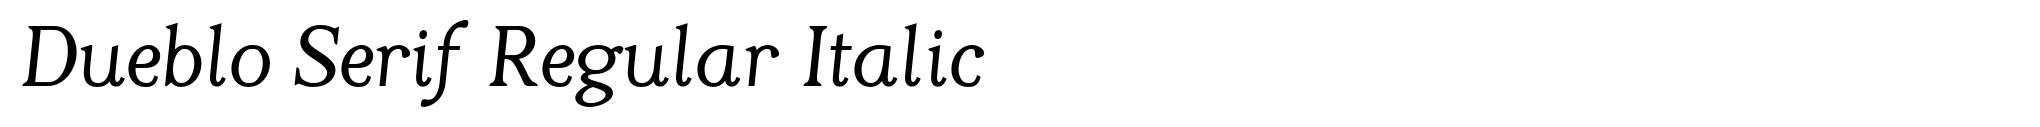 Dueblo Serif Regular Italic image